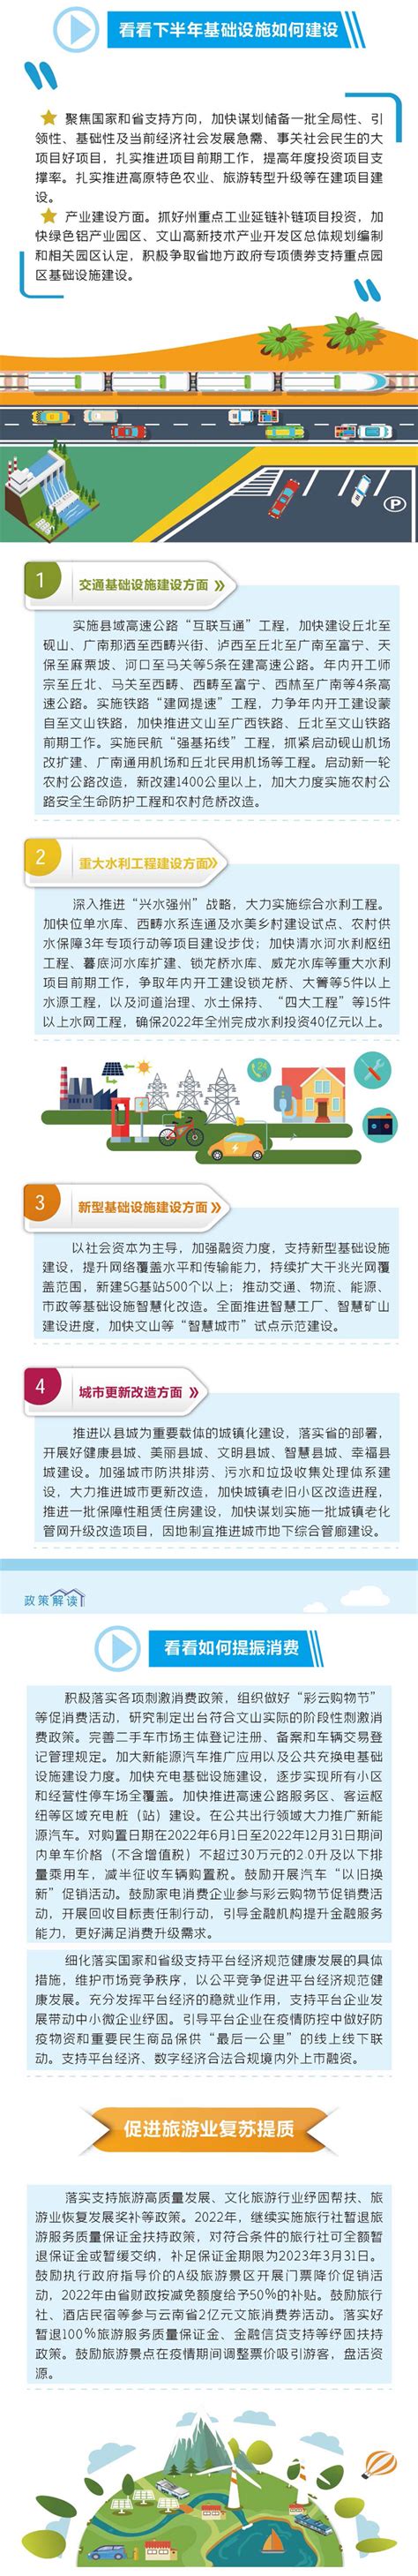 上海地铁11号线在建工地发生火灾(组图)_新闻中心_新浪网